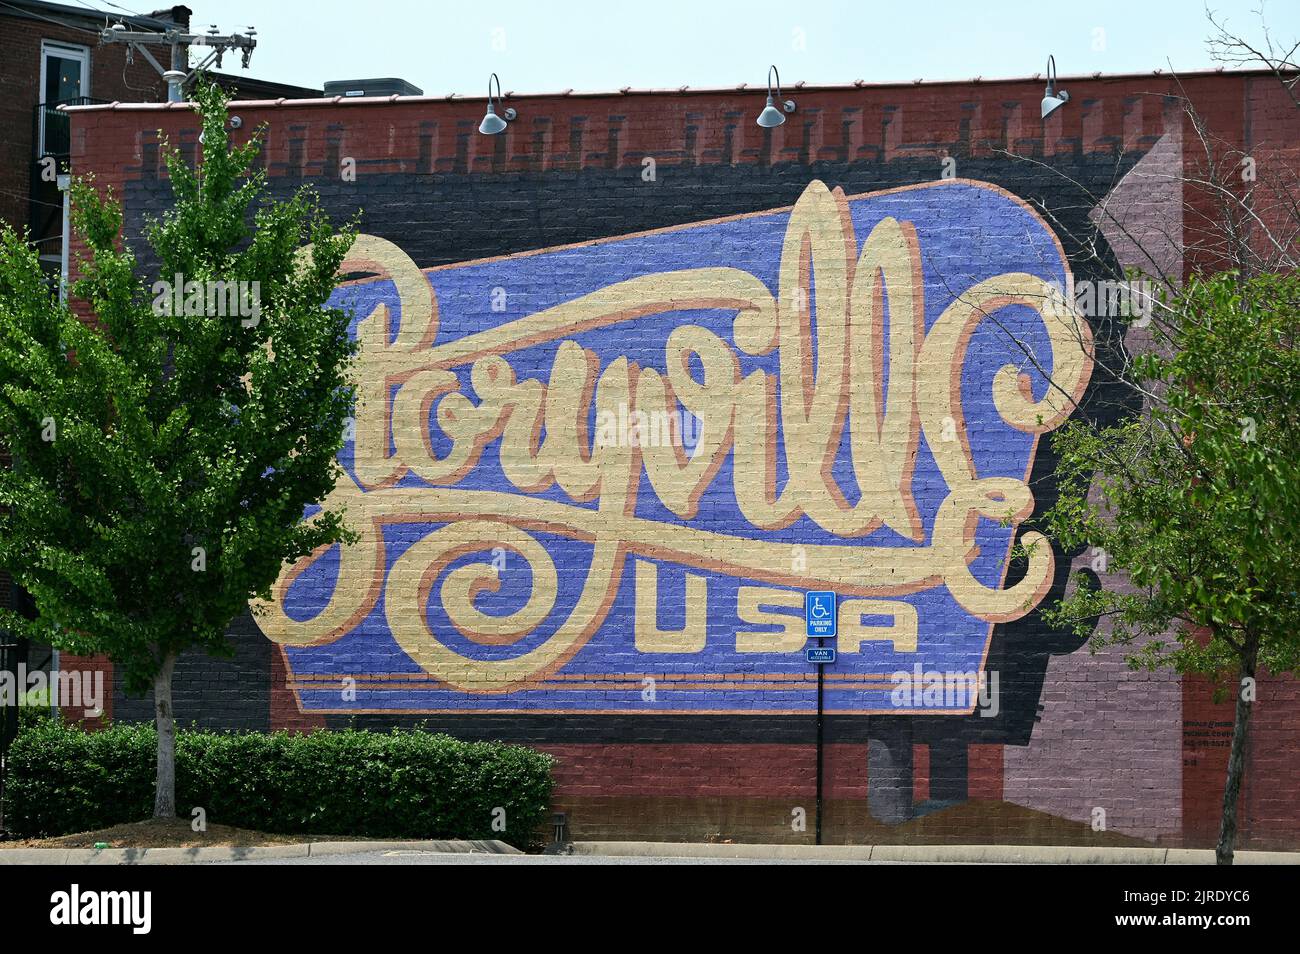 WandgemŠlde Storyville auf dem Broadway; Nashville, Tennessee, Vereinigte Staaten von Amerika Stock Photo